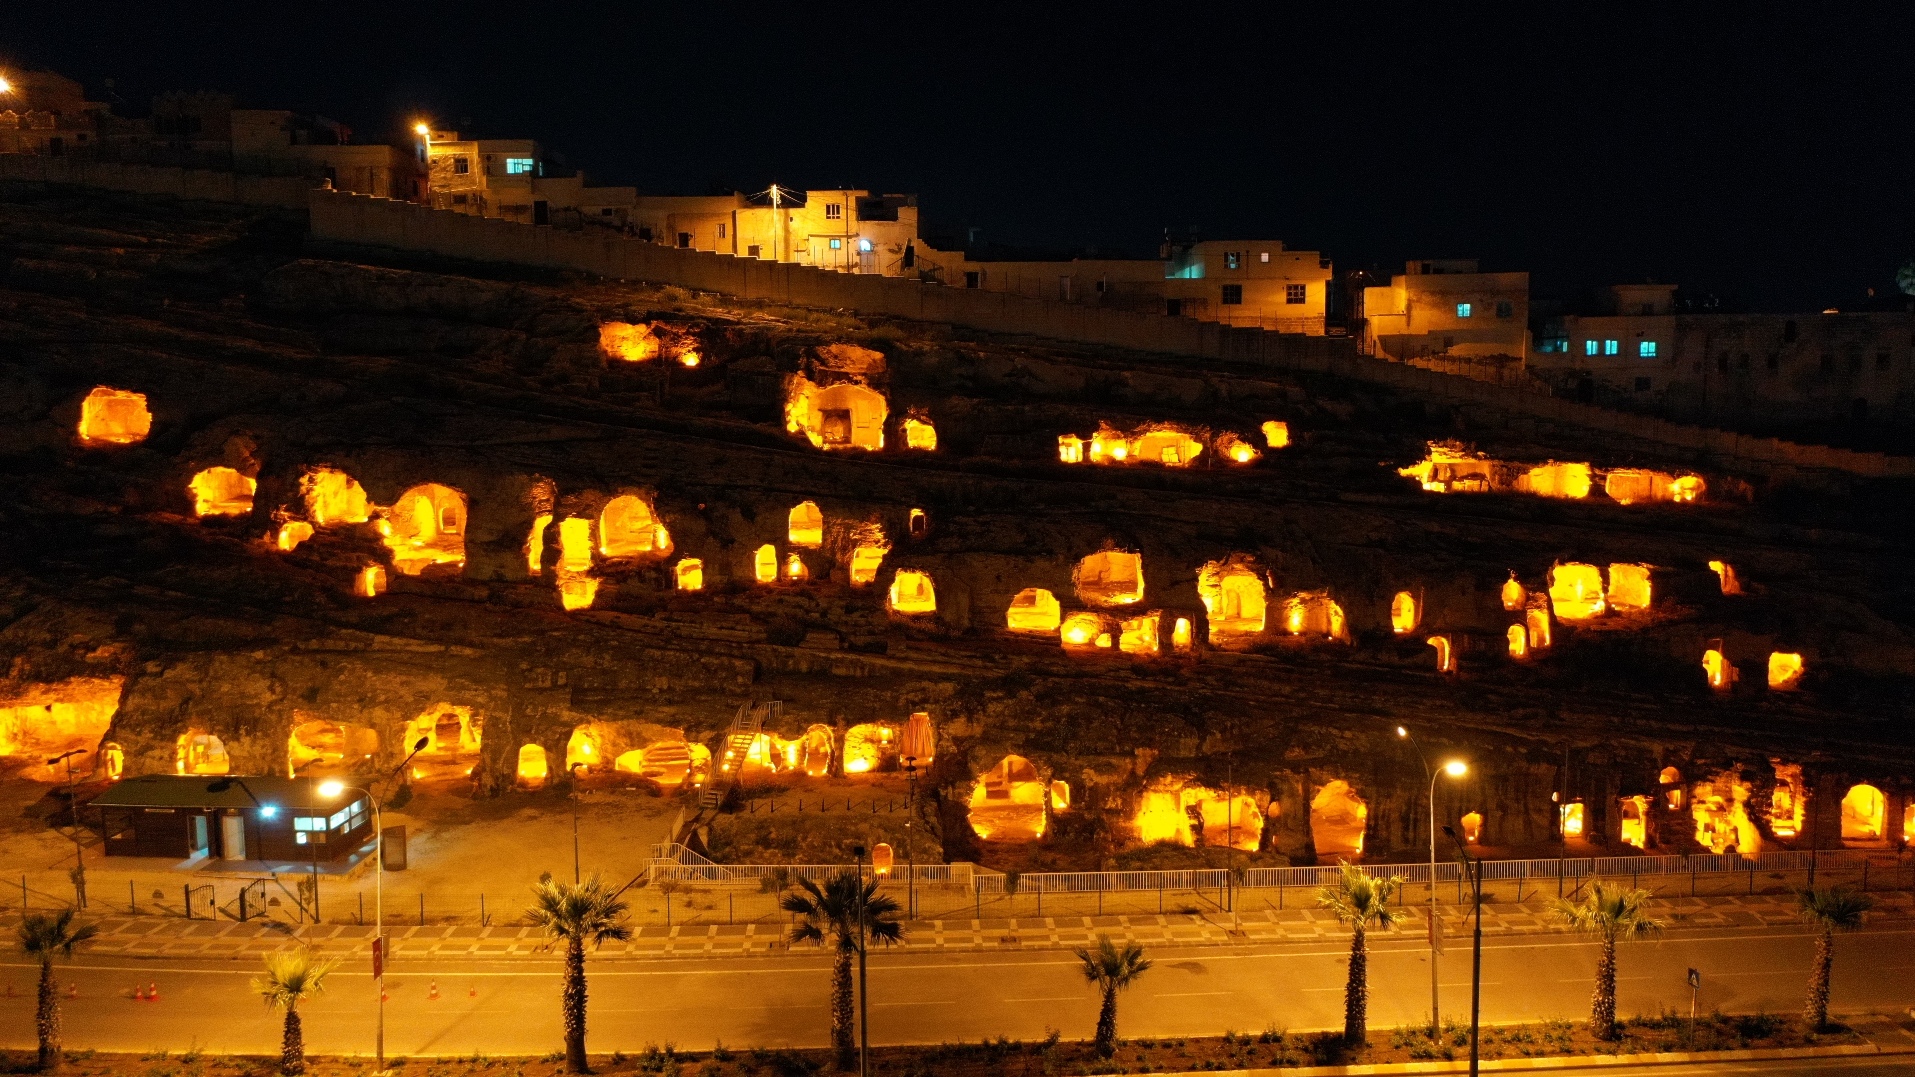 Şanlıurfa'daki turistik mekanlar özel ışıklandırmayla gece de görenleri cezbediyor